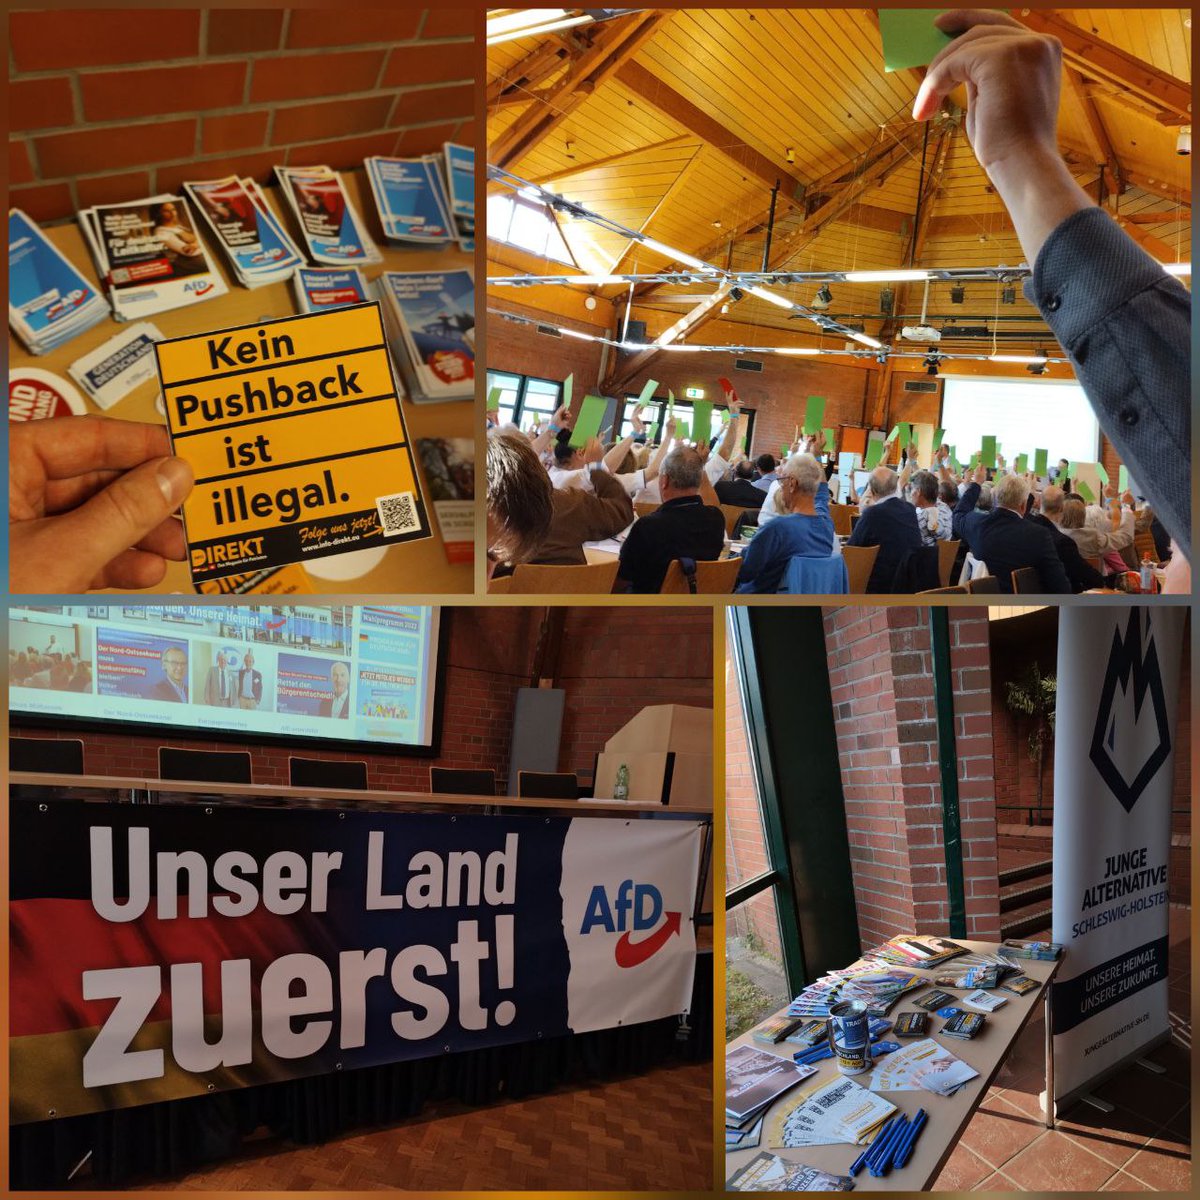 Heute fand der #Landesparteitag der @AfD_LV_SH in #HenstedtUlzburg statt. Auf der Tagesordnung standen u.a. landespolitische Resolutionen, Rechenschaftsberichte und Satzungsänderungen. Wir als JA waren natürlich auch mit einem Stand vertreten.

#AfD #SchleswigHolstein